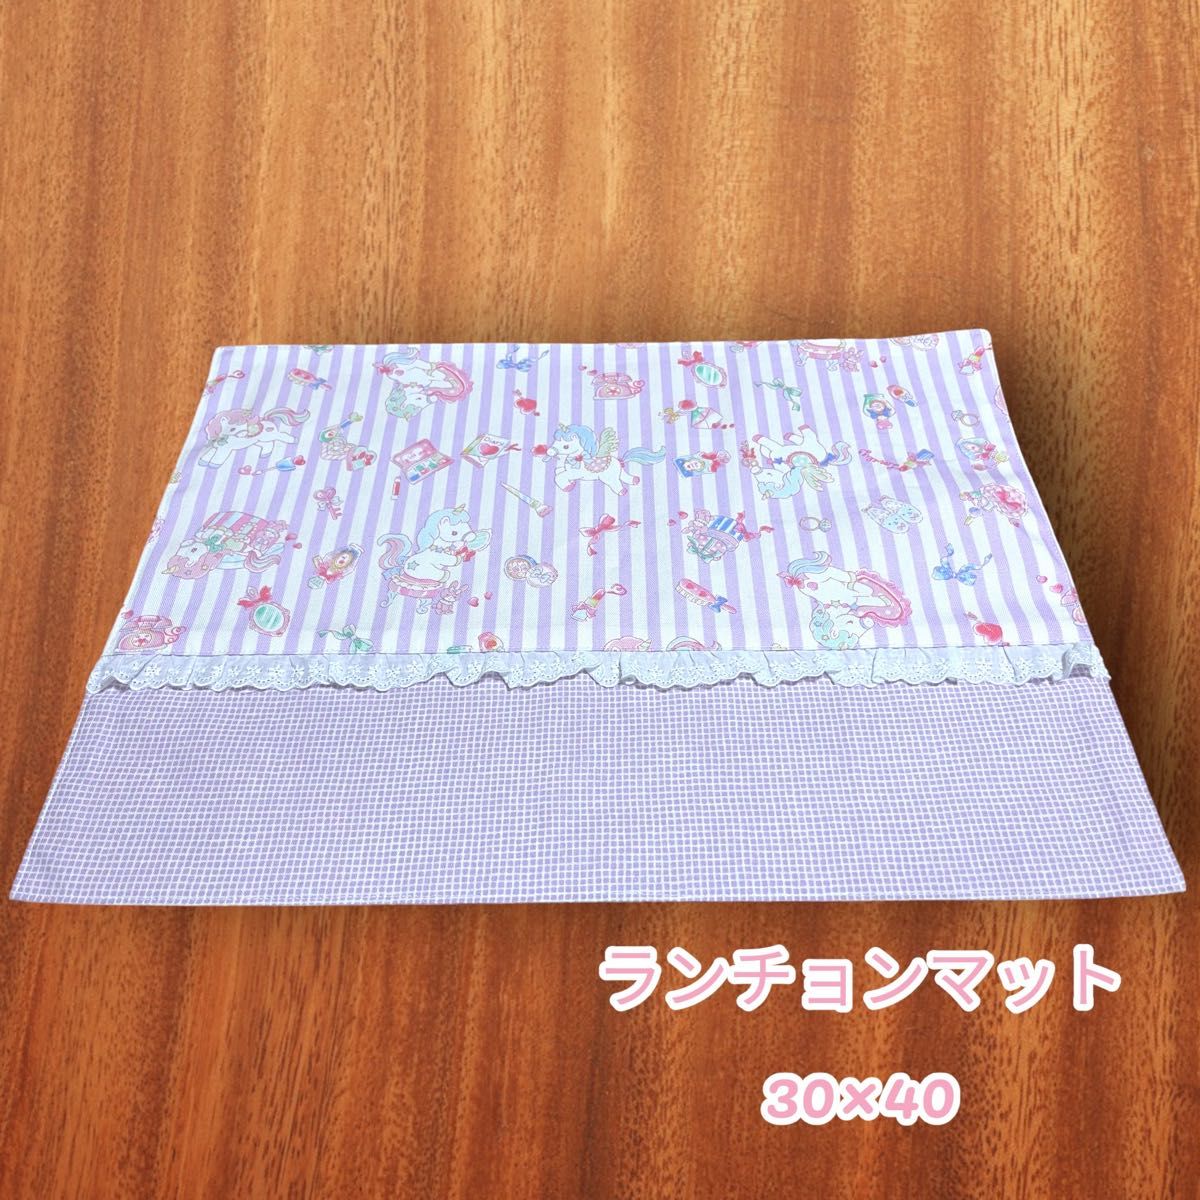 国内発送 No.95 ランチョンマット女の子用 30×40 花柄ピンク系 ハンドメイド